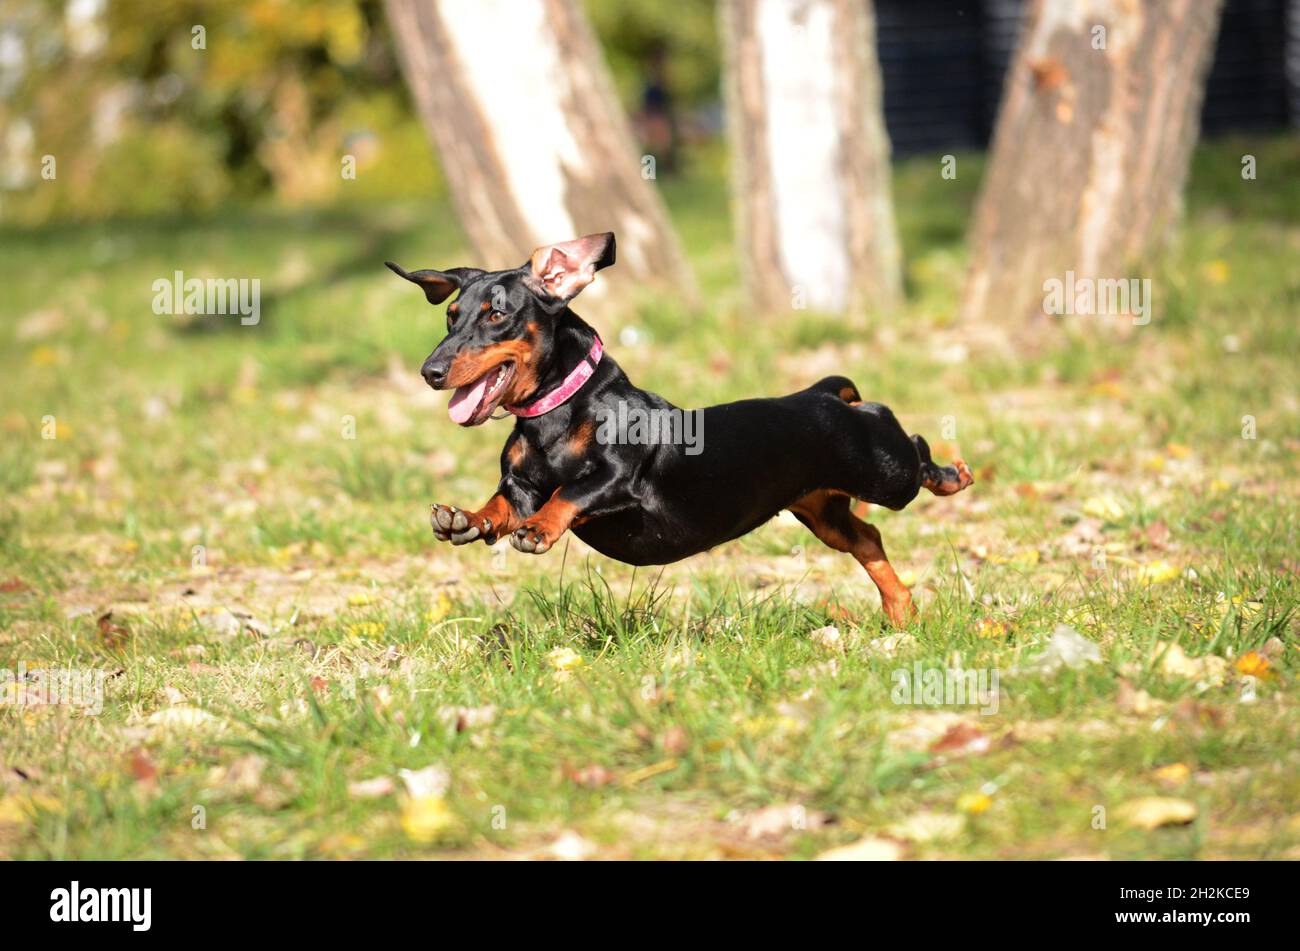 Perro Dachshund corriendo y saltando Foto de stock